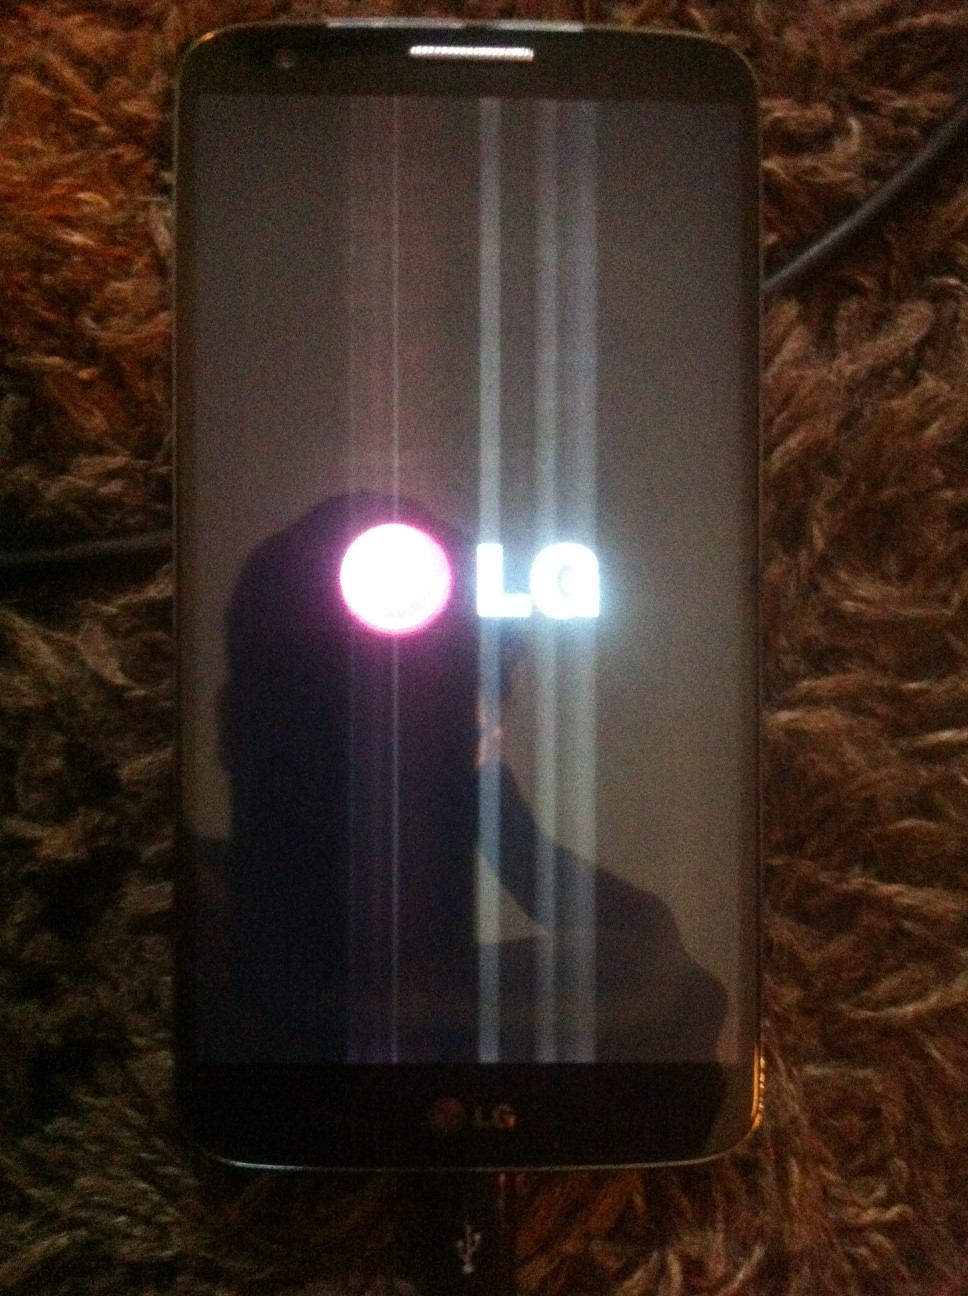  LG G2 Ekran degisimi sonrasi telefon calismiyor